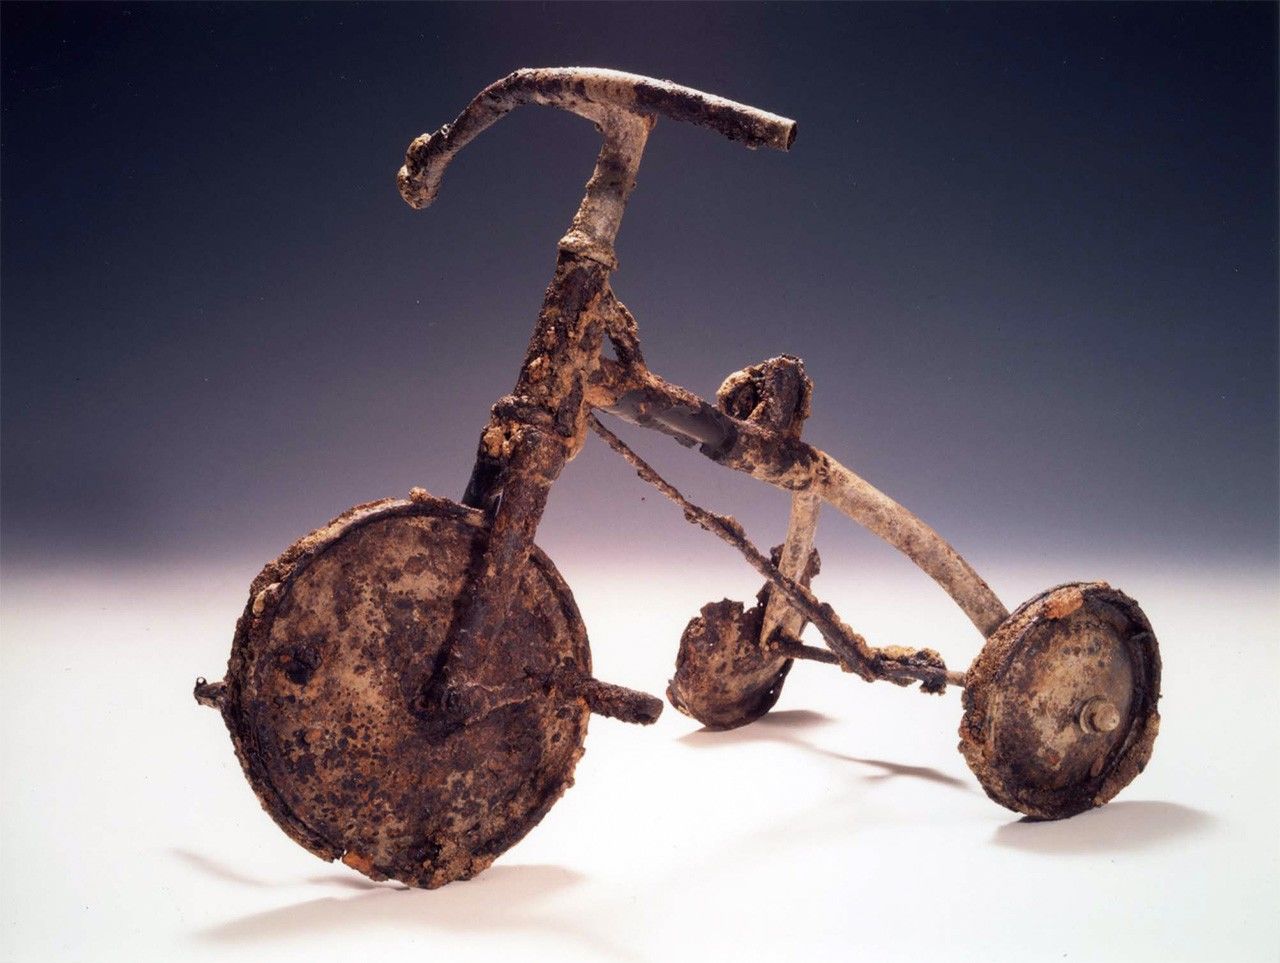 دراجة ثلاثية العجلات من مجموعة متحف هيروشيما التذكاري للسلام. تبرع بها تيتسوتاني نوبو.